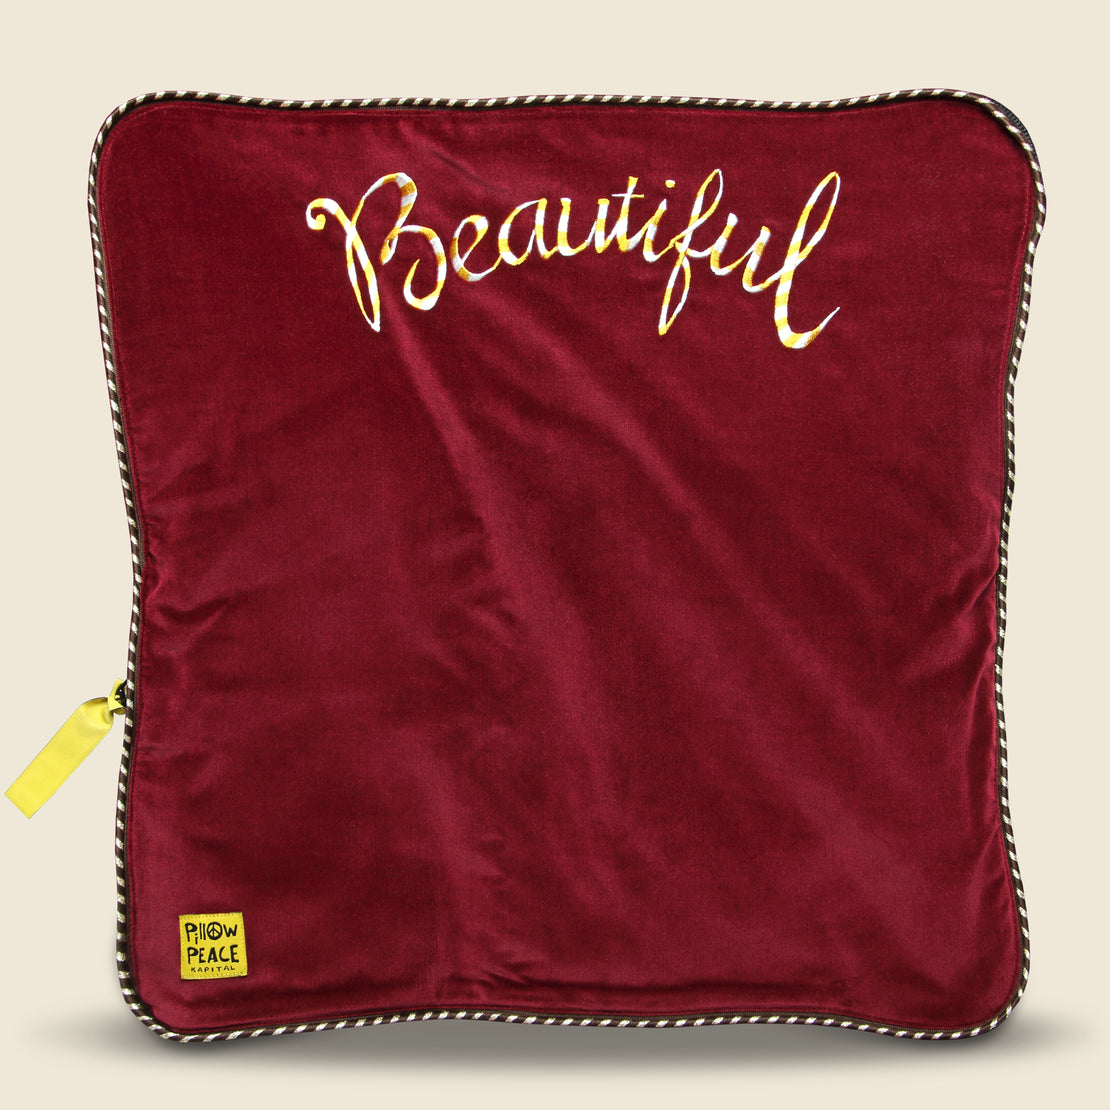 Velveteen SHAM BOMBER JKT (Beautiful TIBET) - Burgundy - Kapital - STAG Provisions - Outerwear - Coat / Jacket